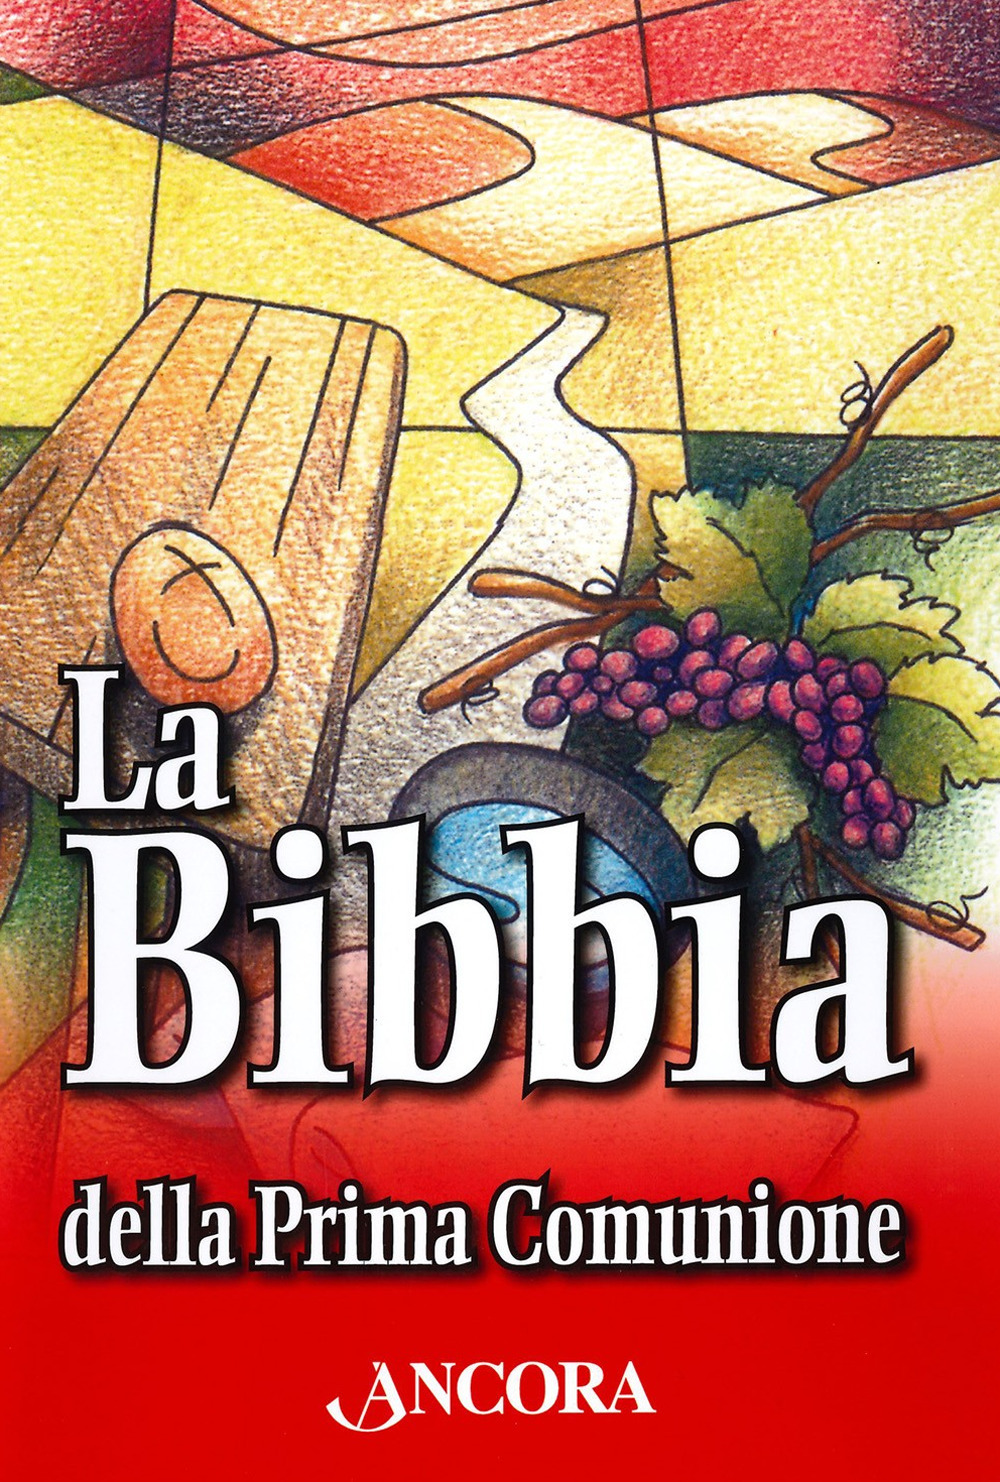 Libri Bibbia Della Prima Comunione (La) NUOVO SIGILLATO, EDIZIONE DEL 05/02/2019 SUBITO DISPONIBILE